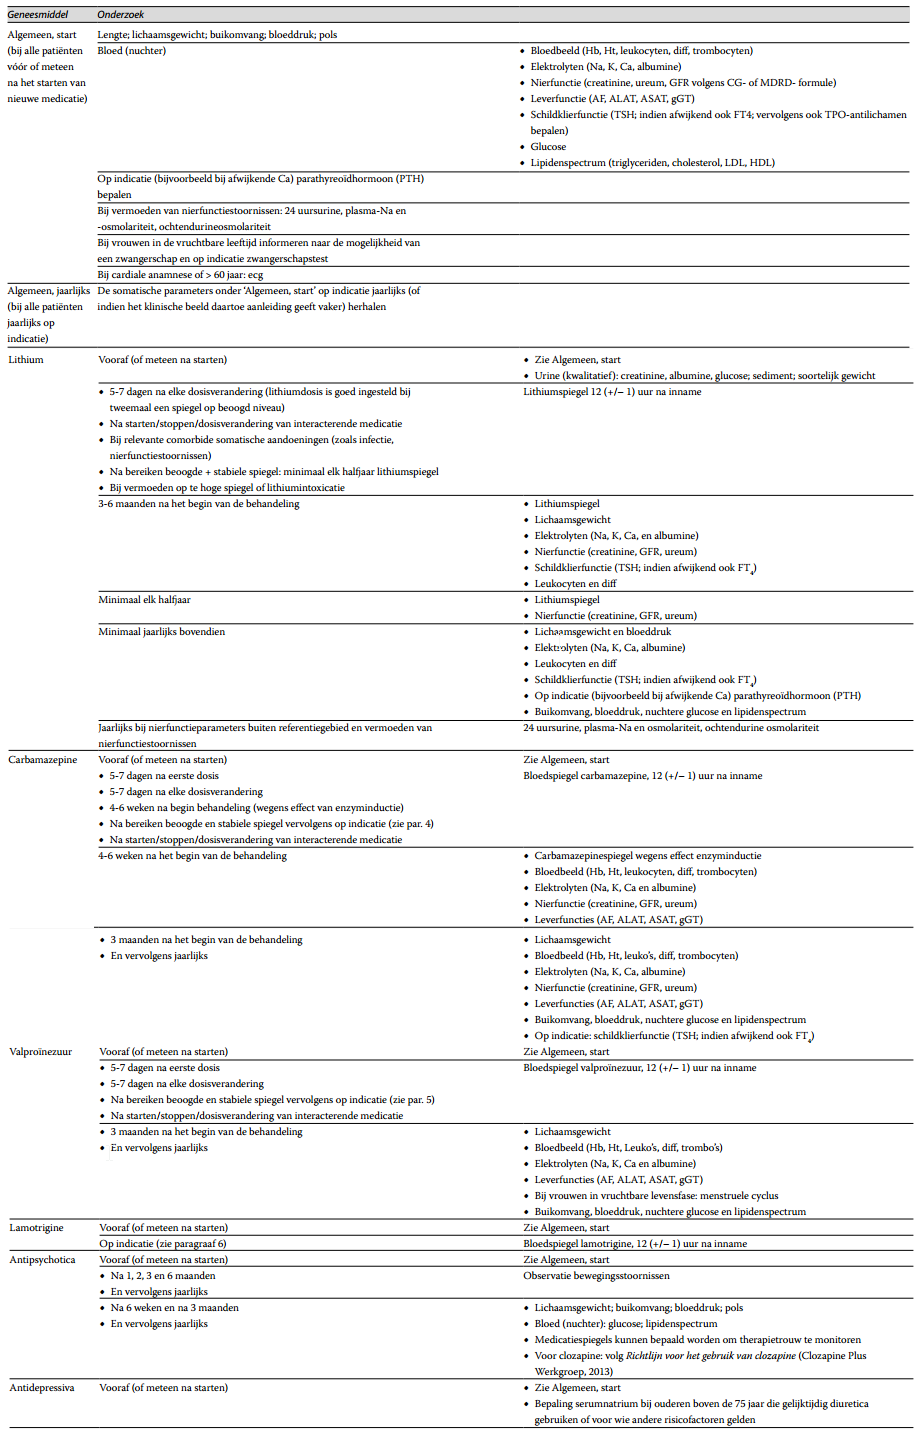 Tabel 1. Routinematig somatisch en laboratoriumonderzoek bij psycho-farmacagebruik voor bipolaire stoornissen